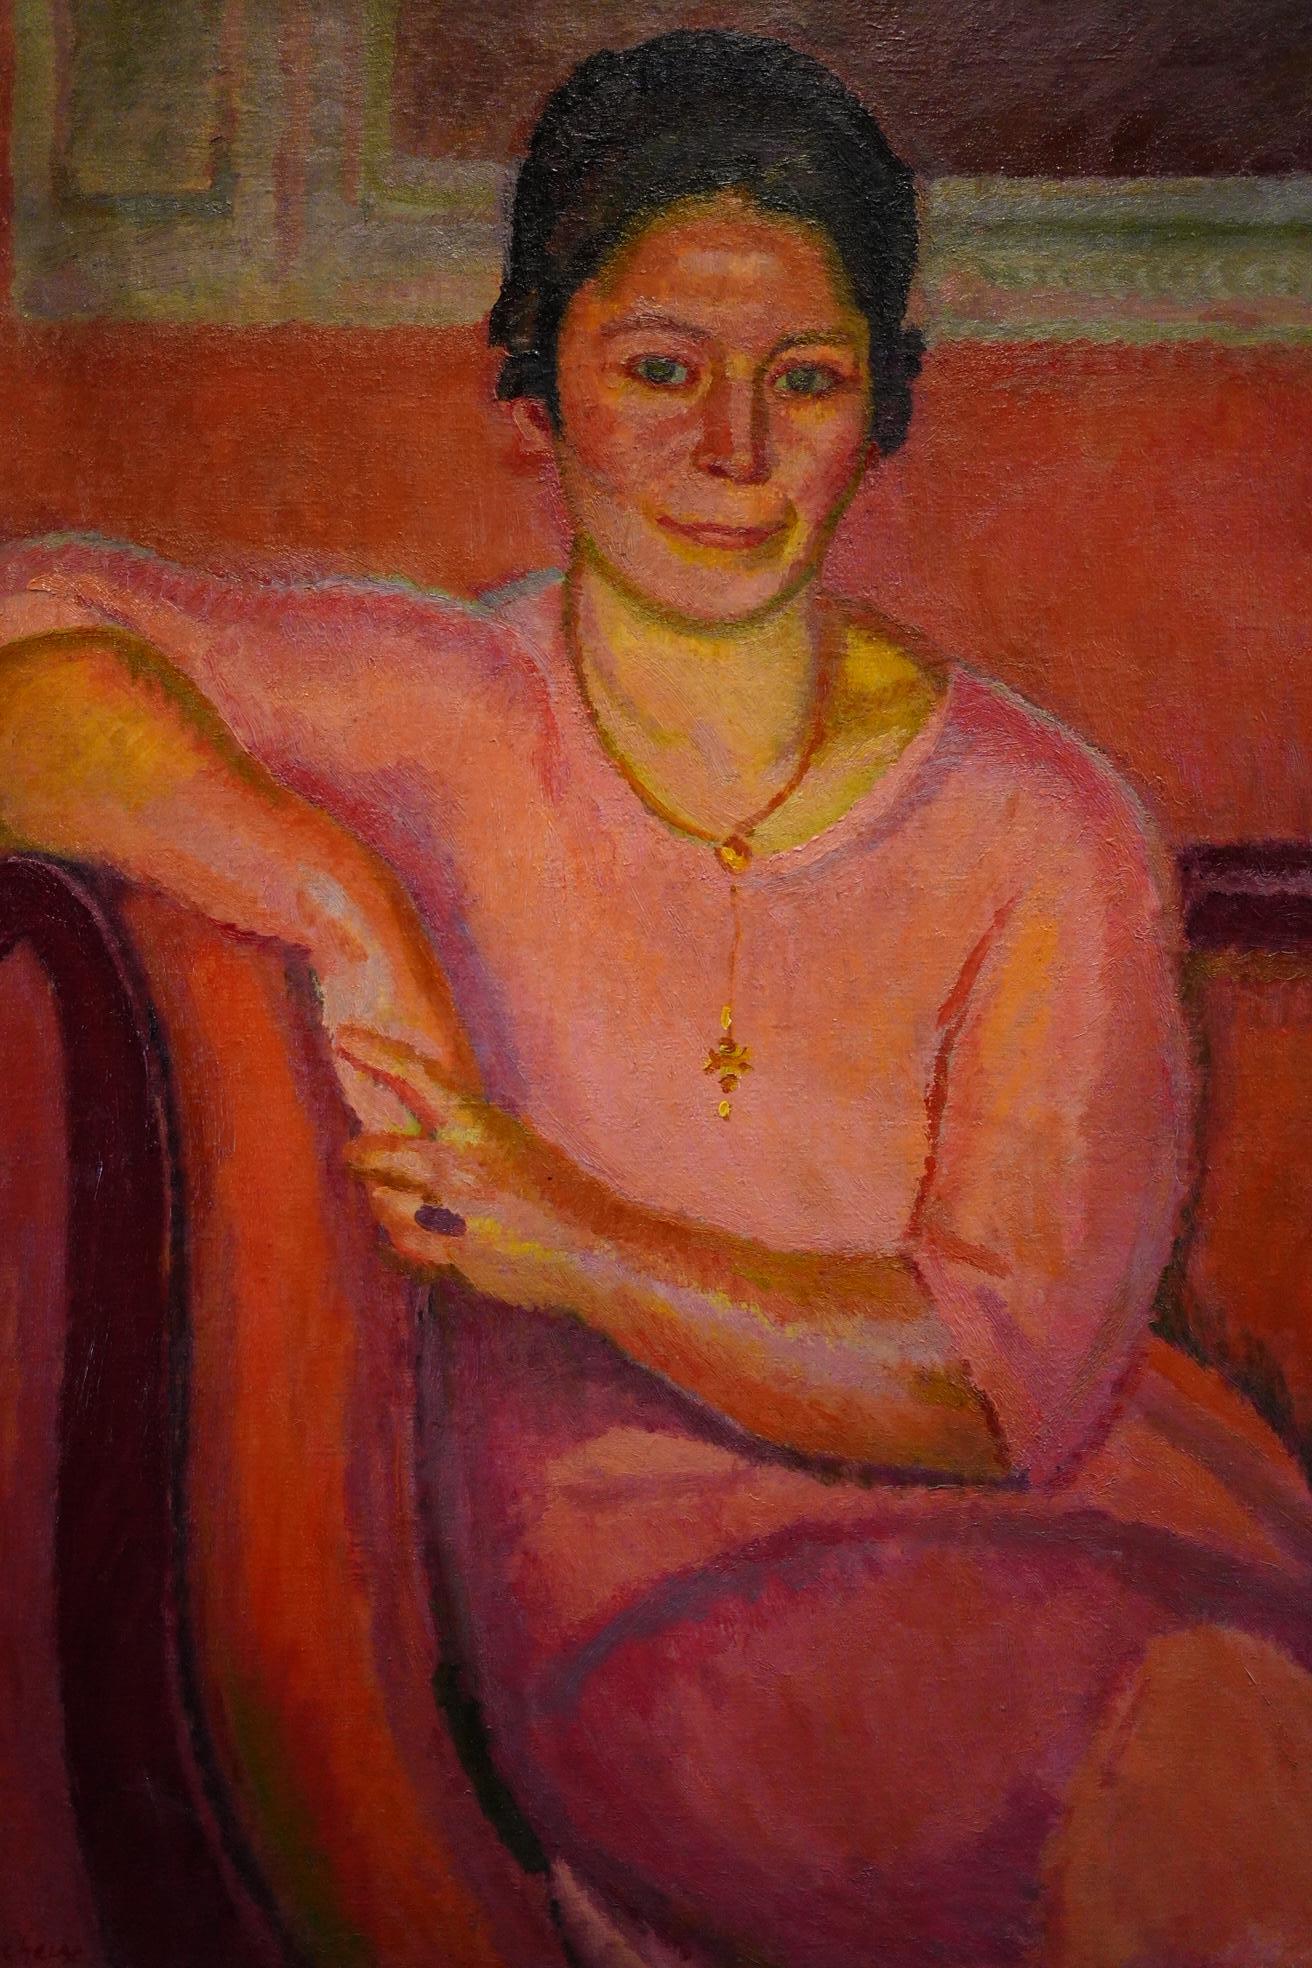 Woman portrait by Armand Cacheux - Oil on canvas 92x73 cm